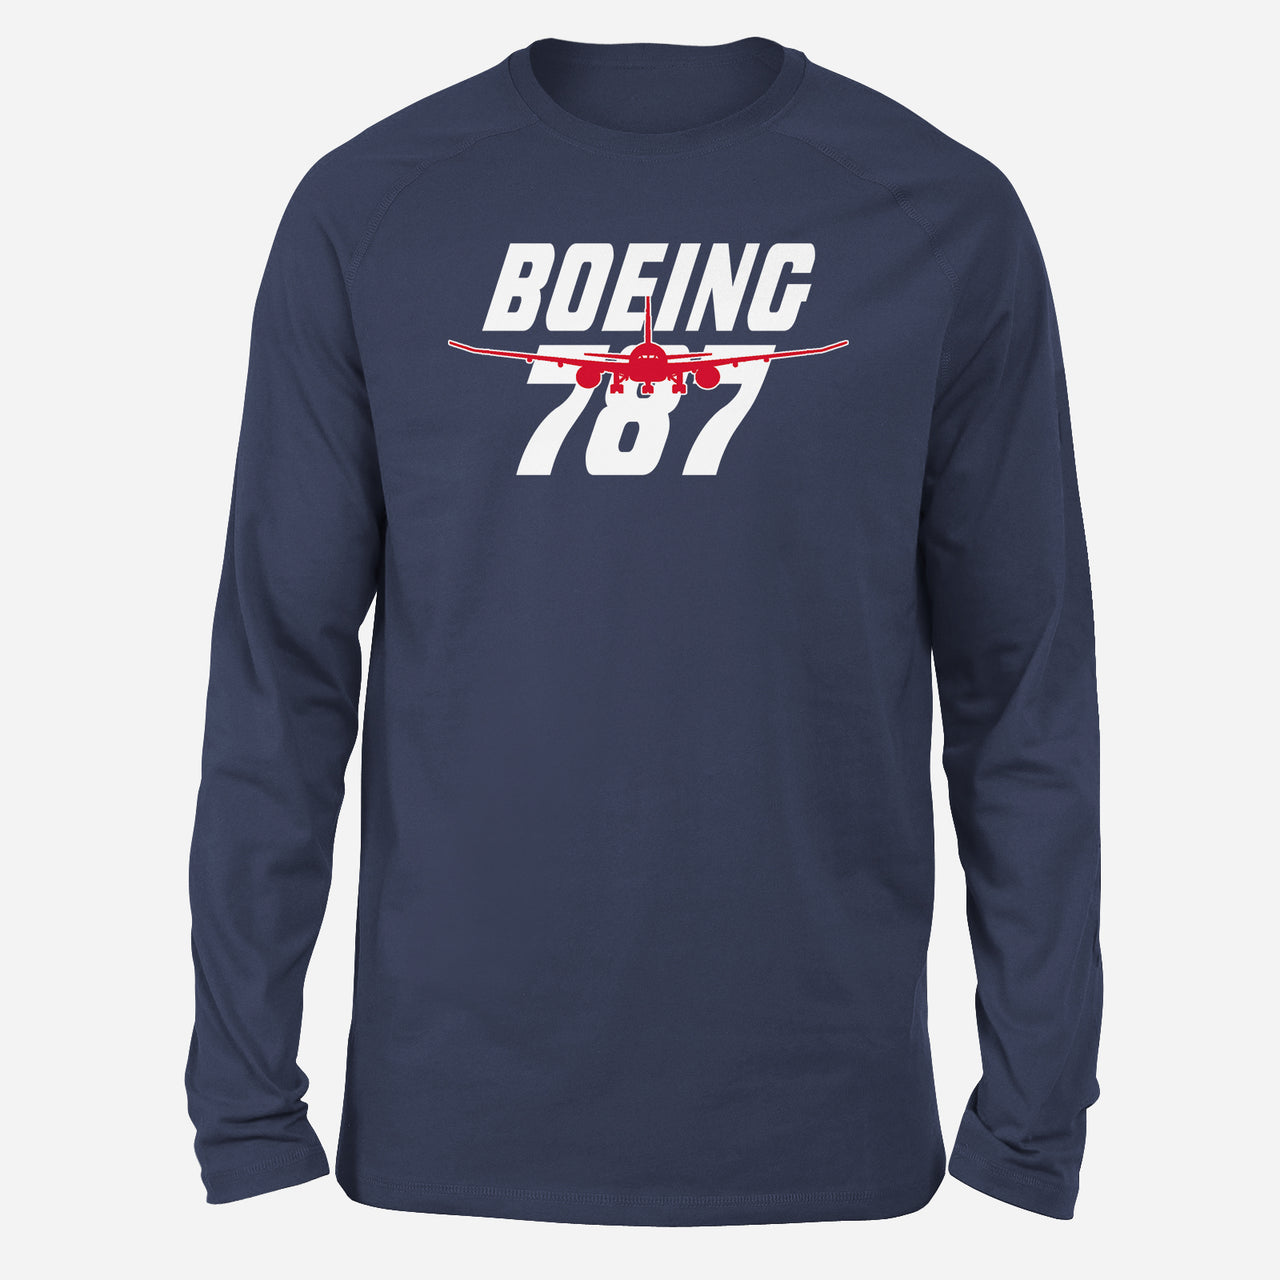 Amazing Boeing 787 Designed Long-Sleeve T-Shirts